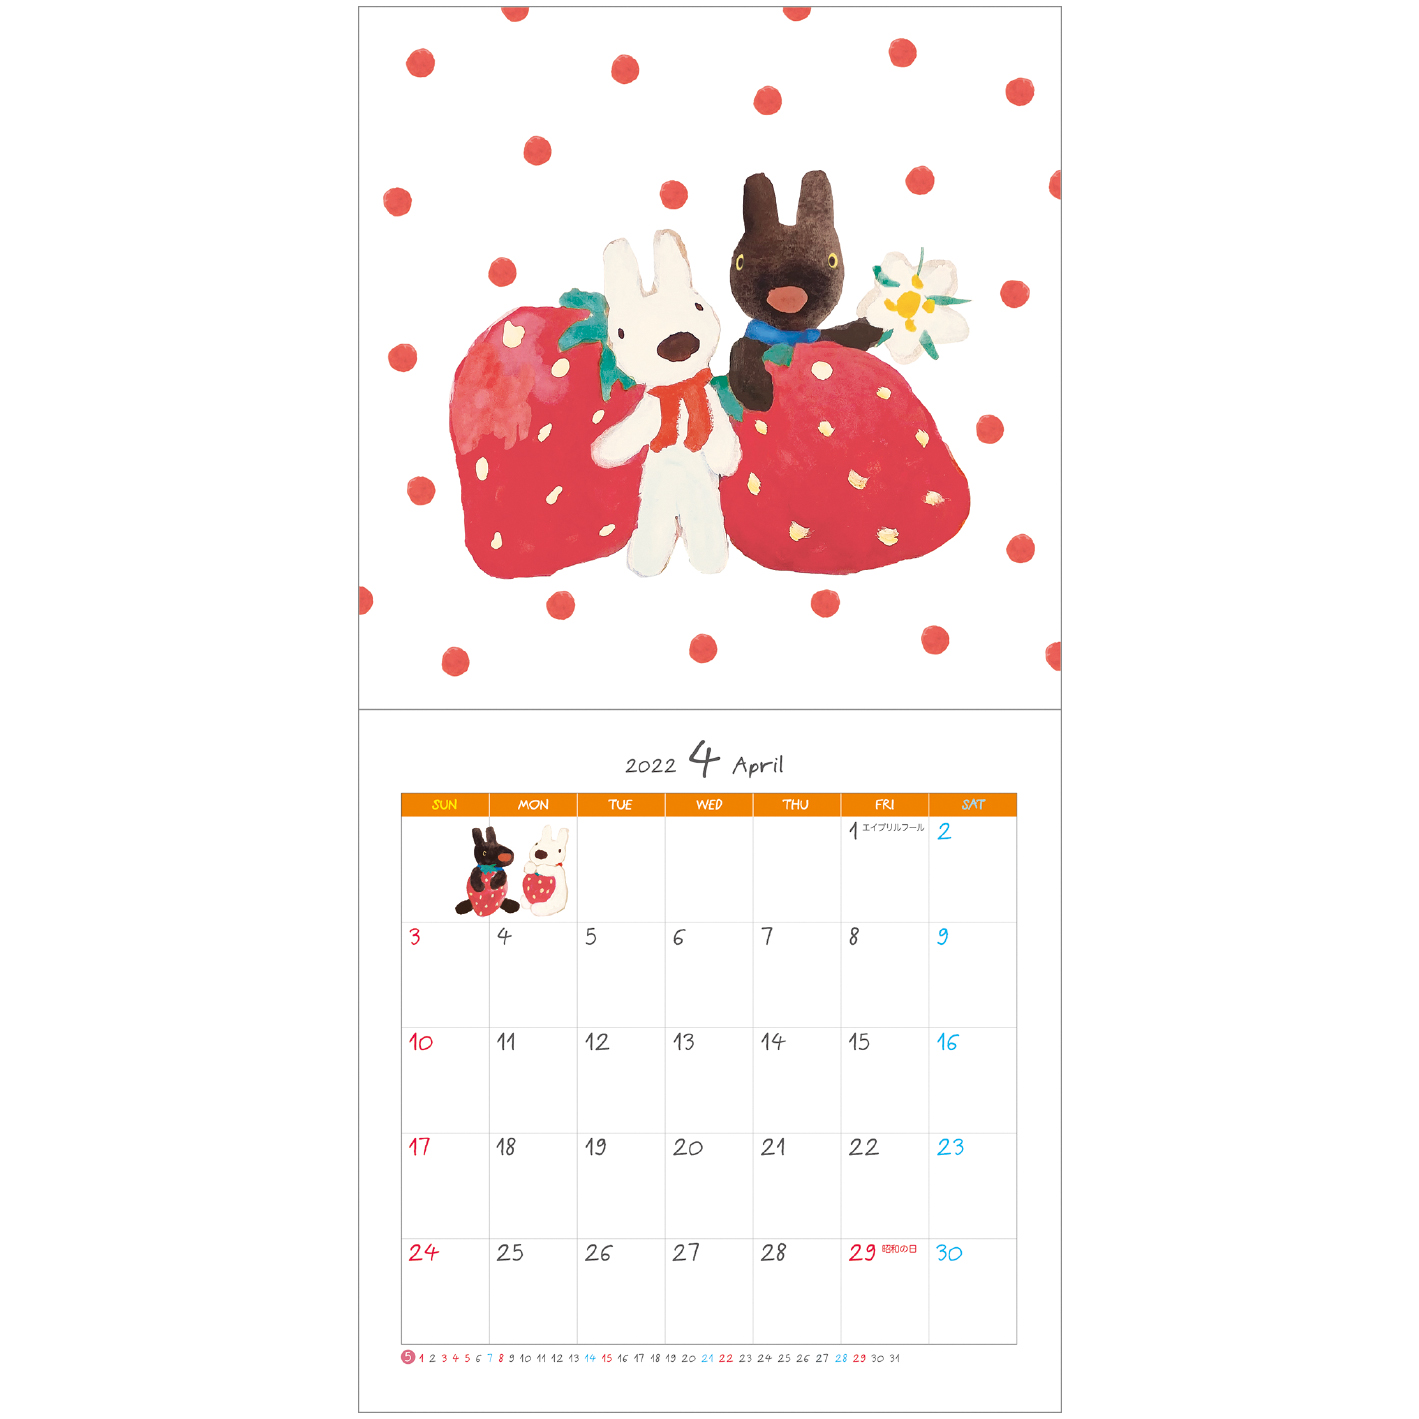 リサとガスパール　カレンダー